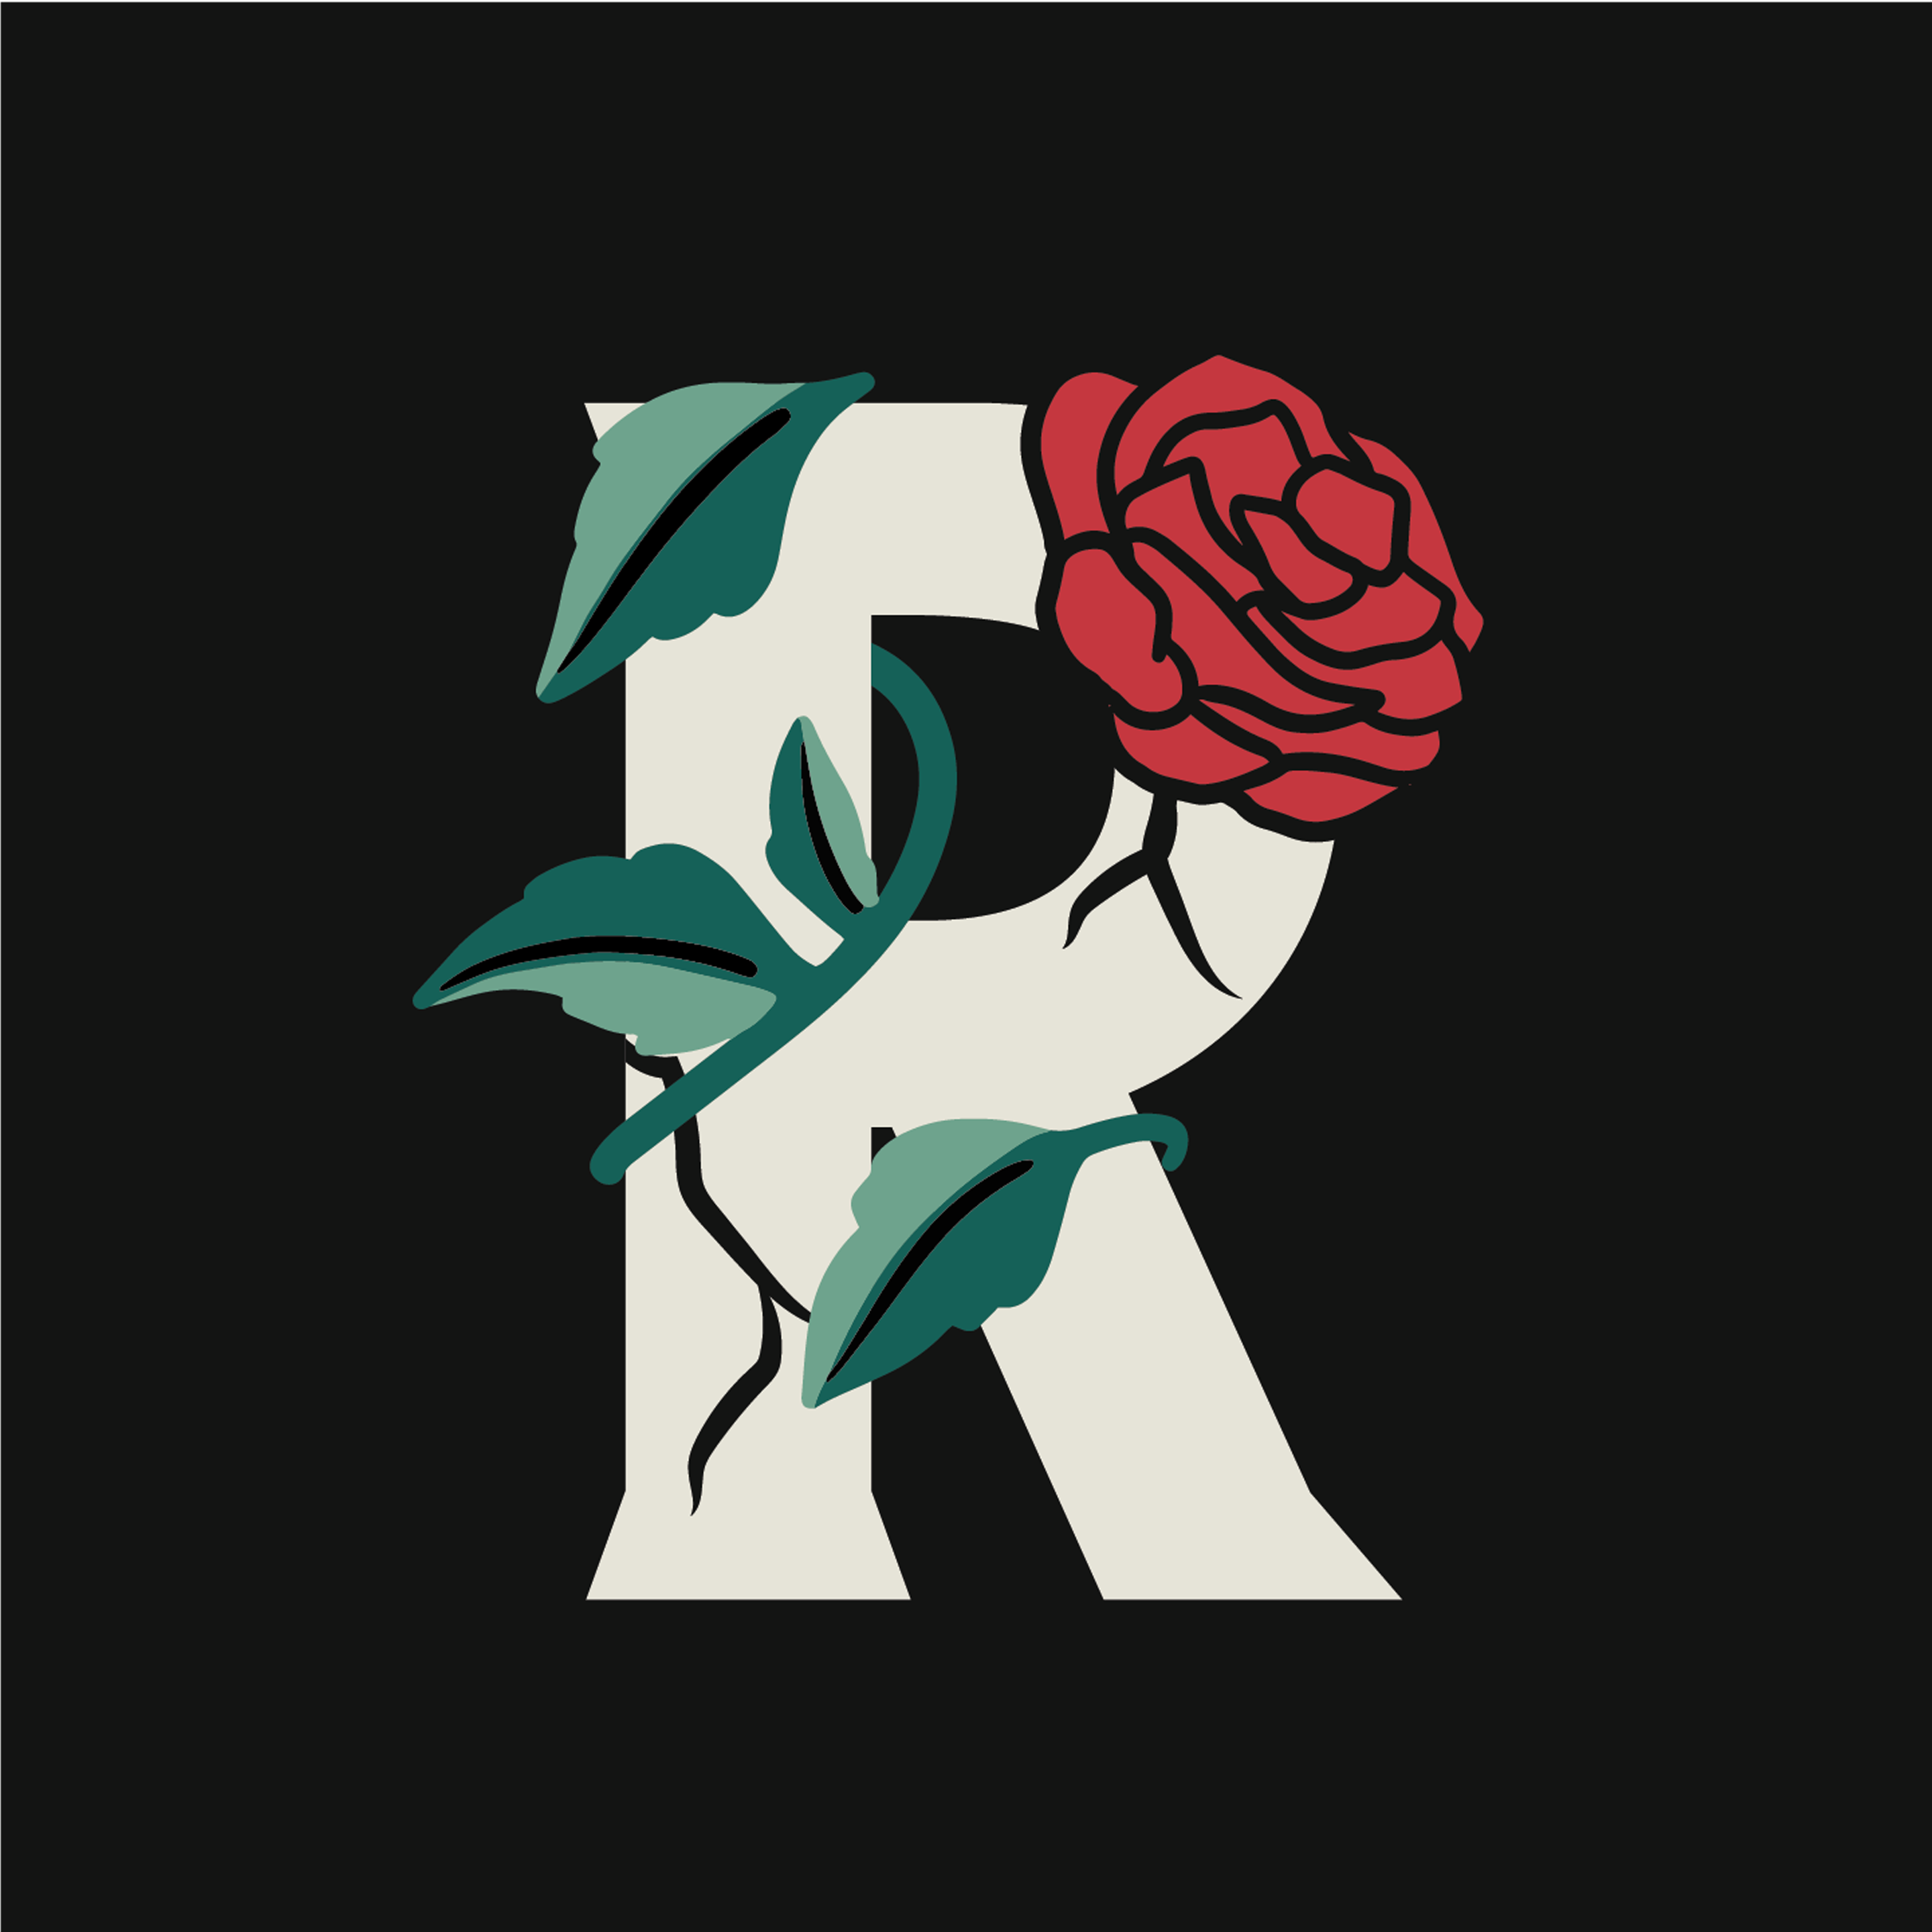 rose-letter-r-design-theme